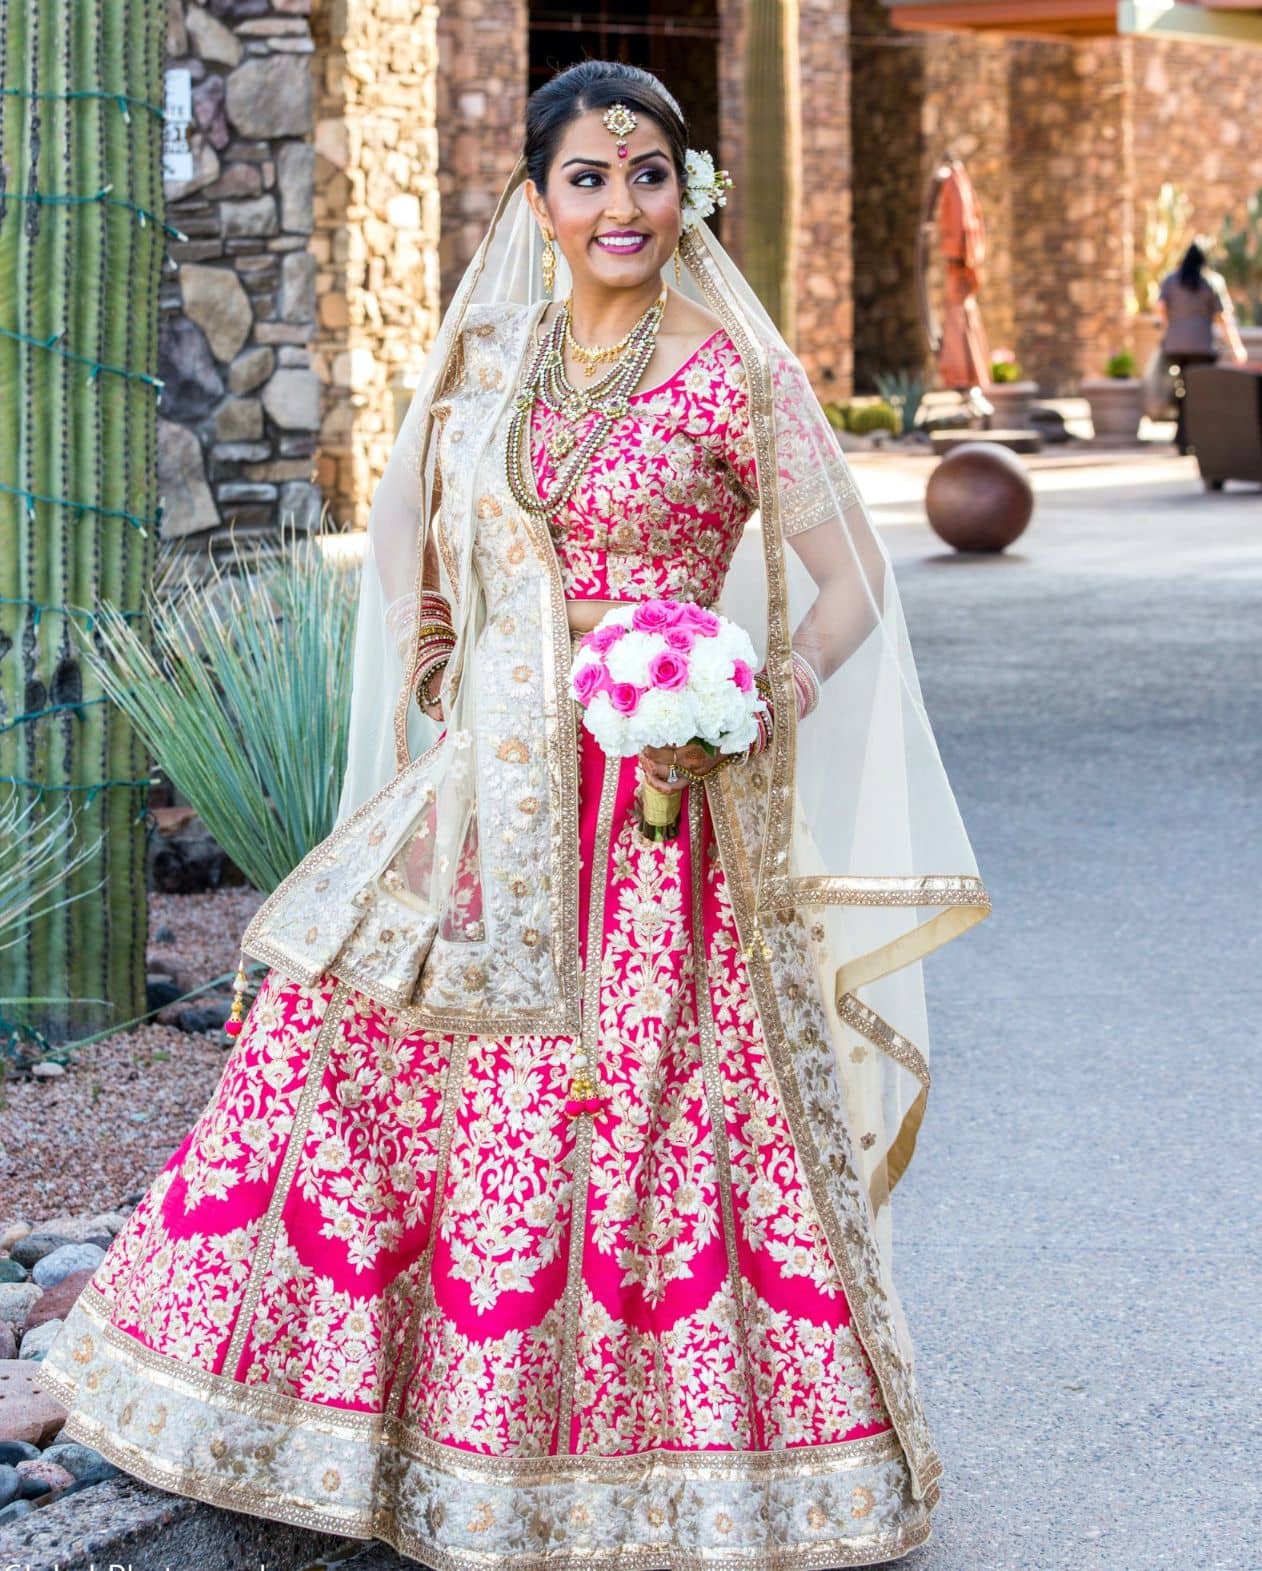 Mesmerizing Punjabi bridal lehenga in dark pink and mint green color